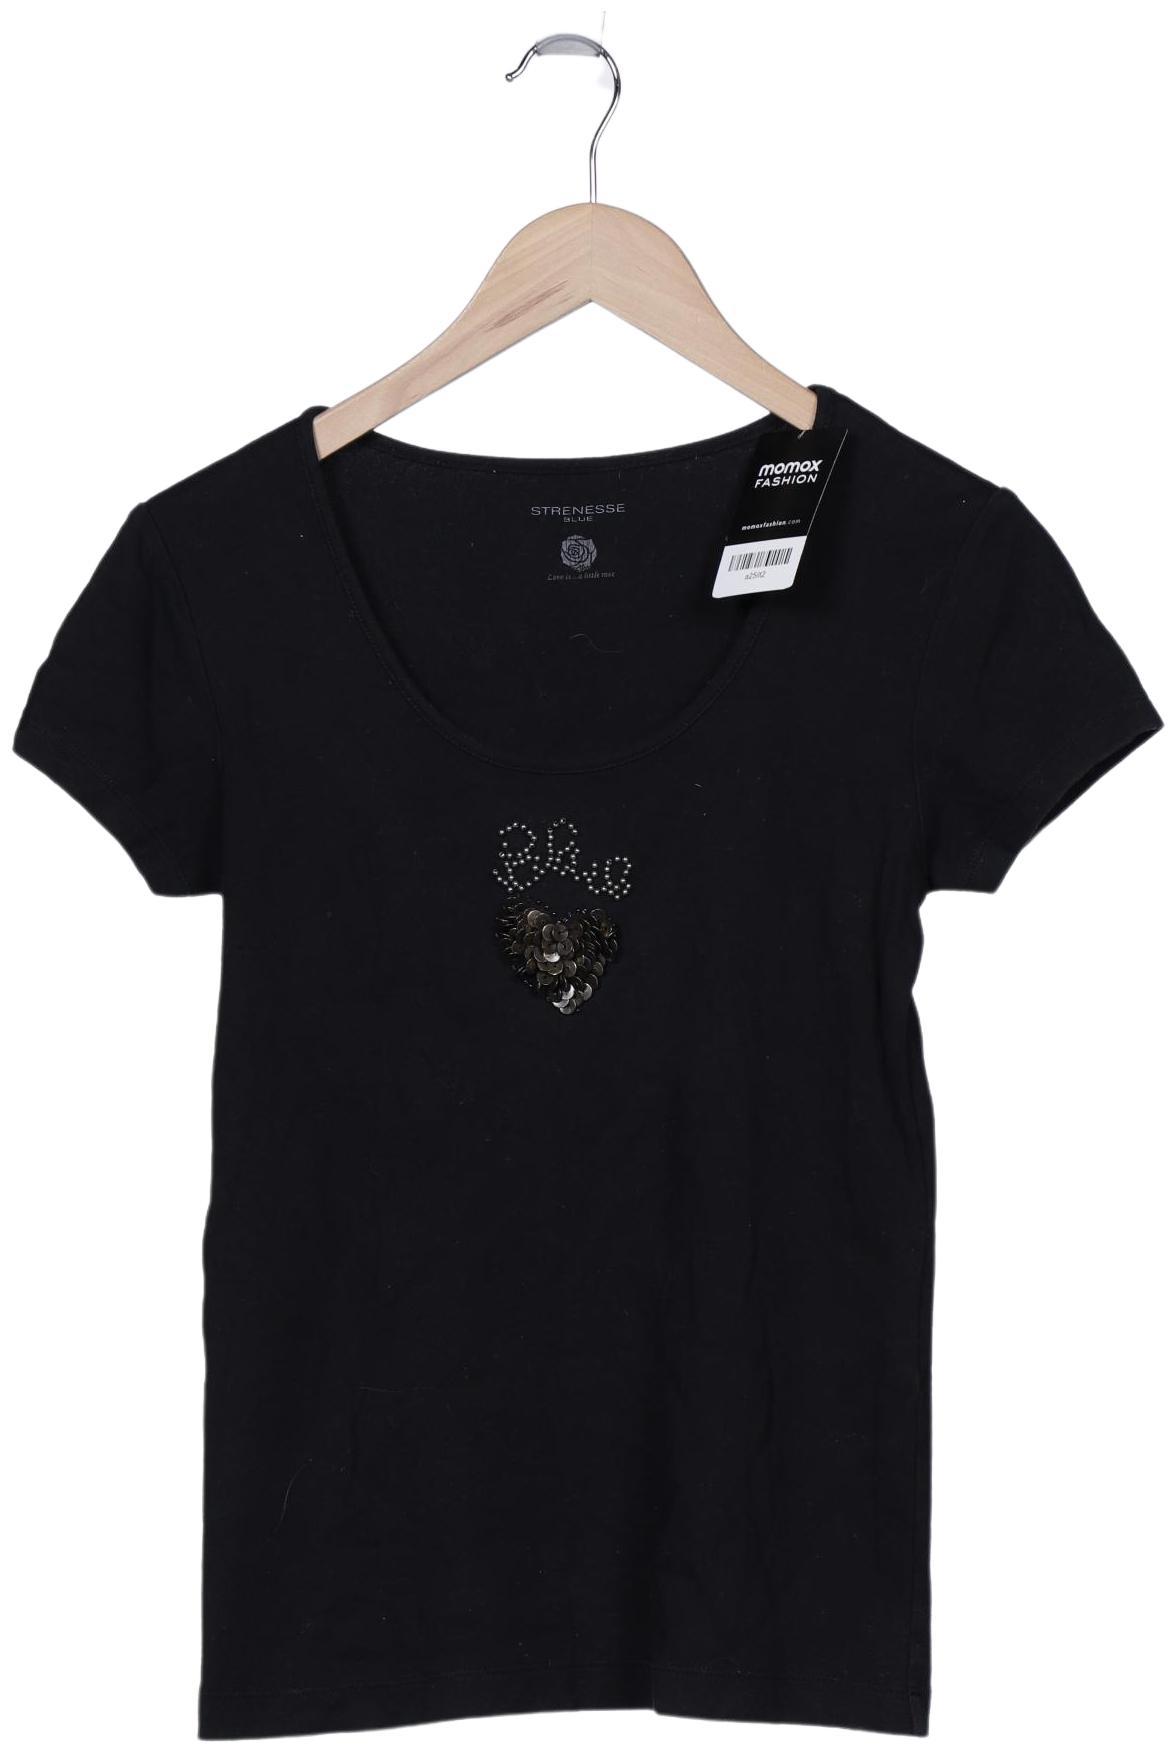 Strenesse Damen T-Shirt, schwarz, Gr. 38 von Strenesse